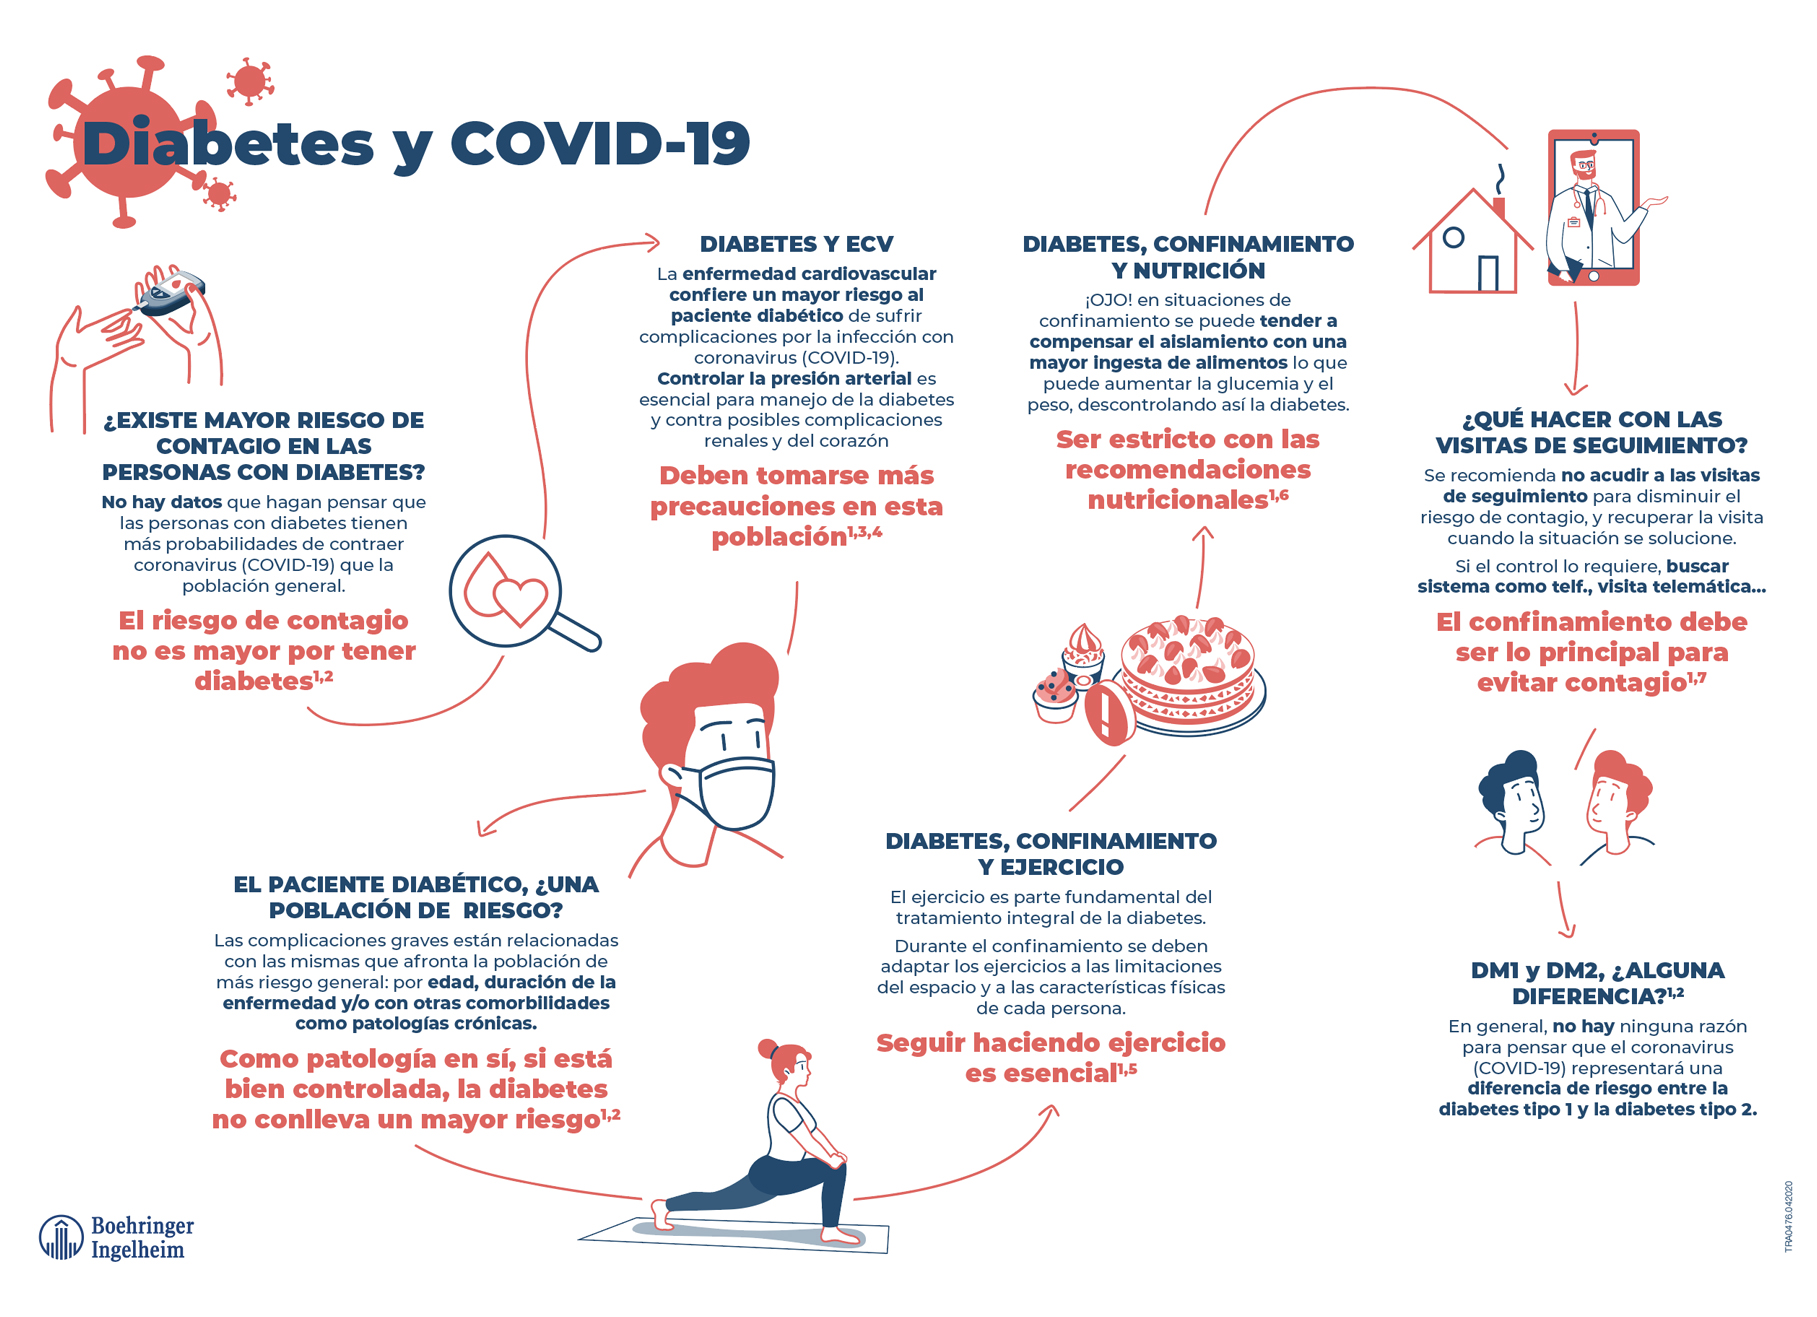 Cardiorrenal.es | COVID-19 y el paciente con DM2